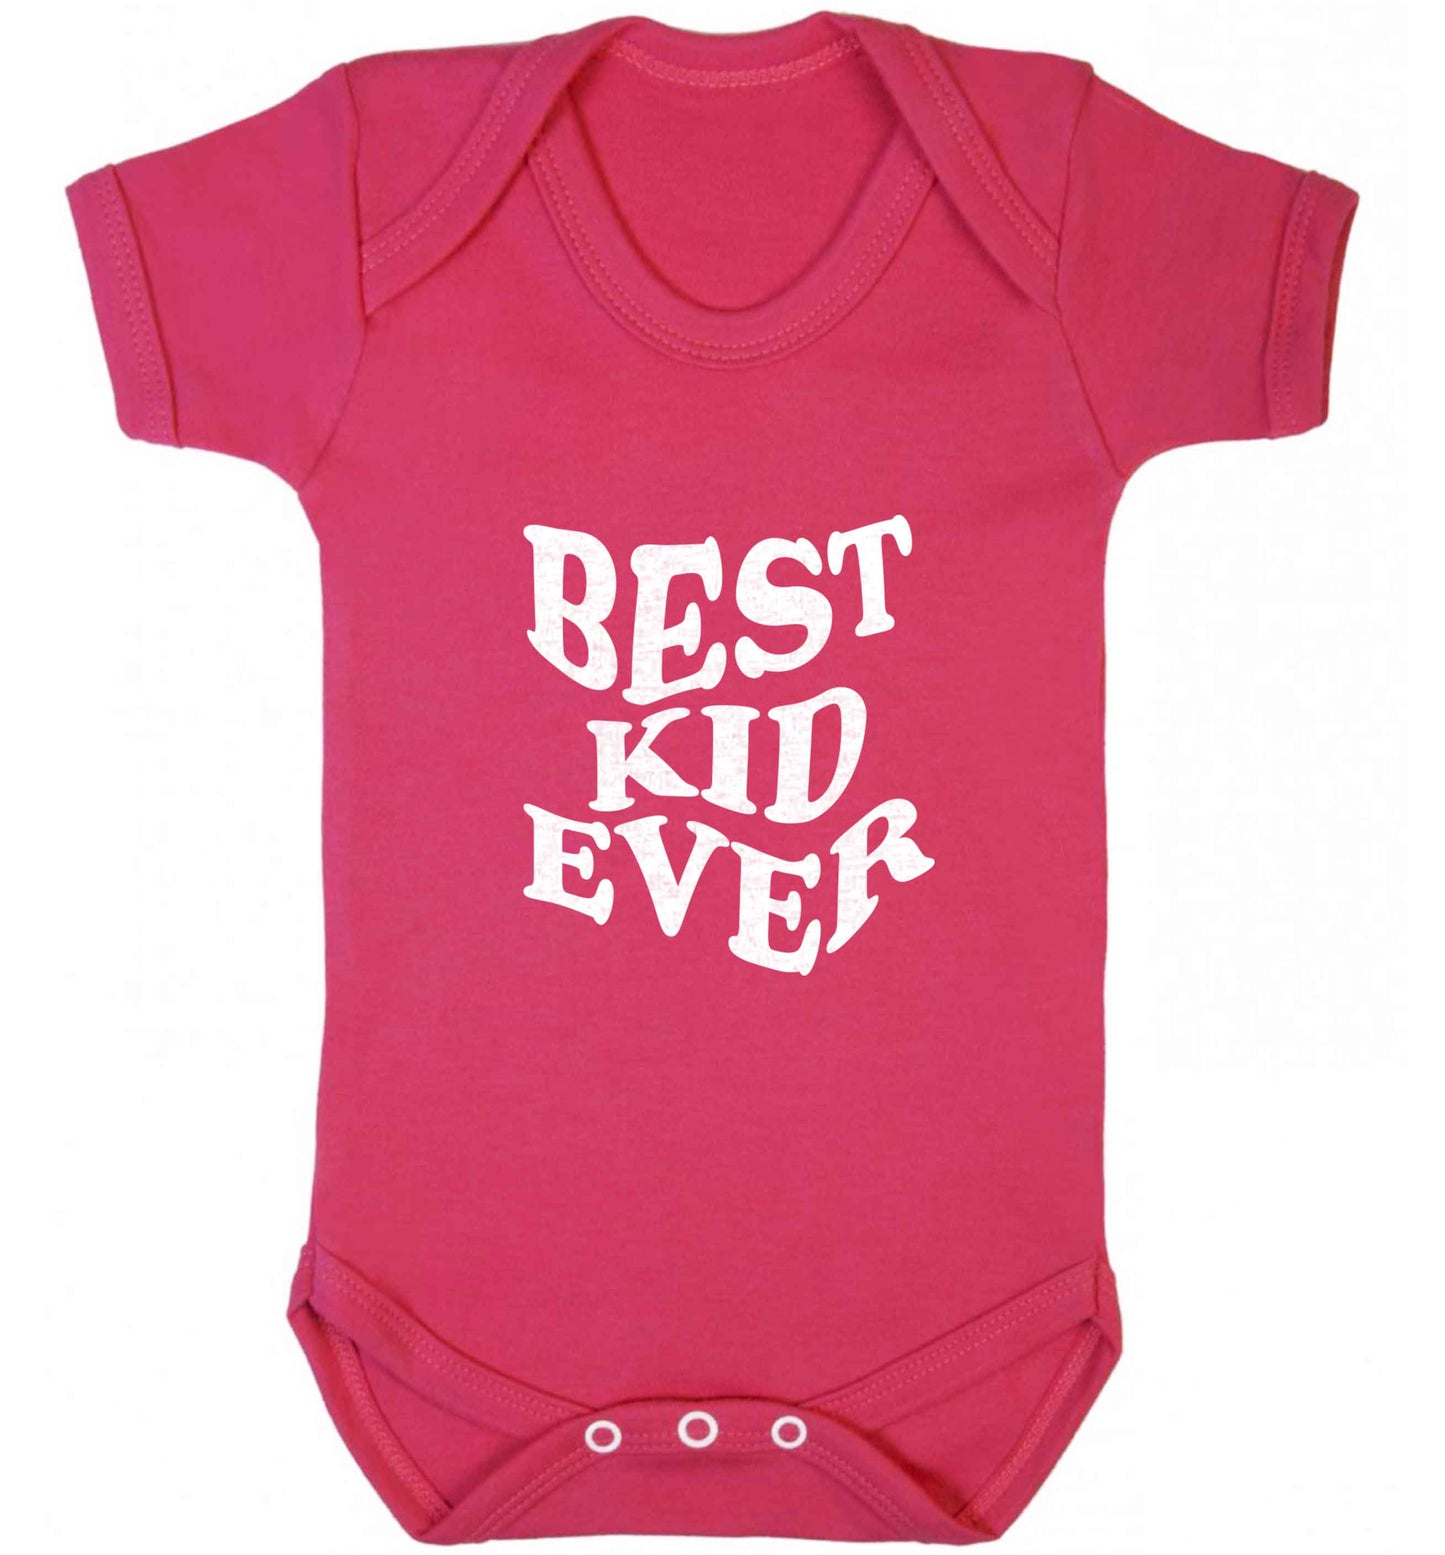 Best kid ever baby vest dark pink 18-24 months